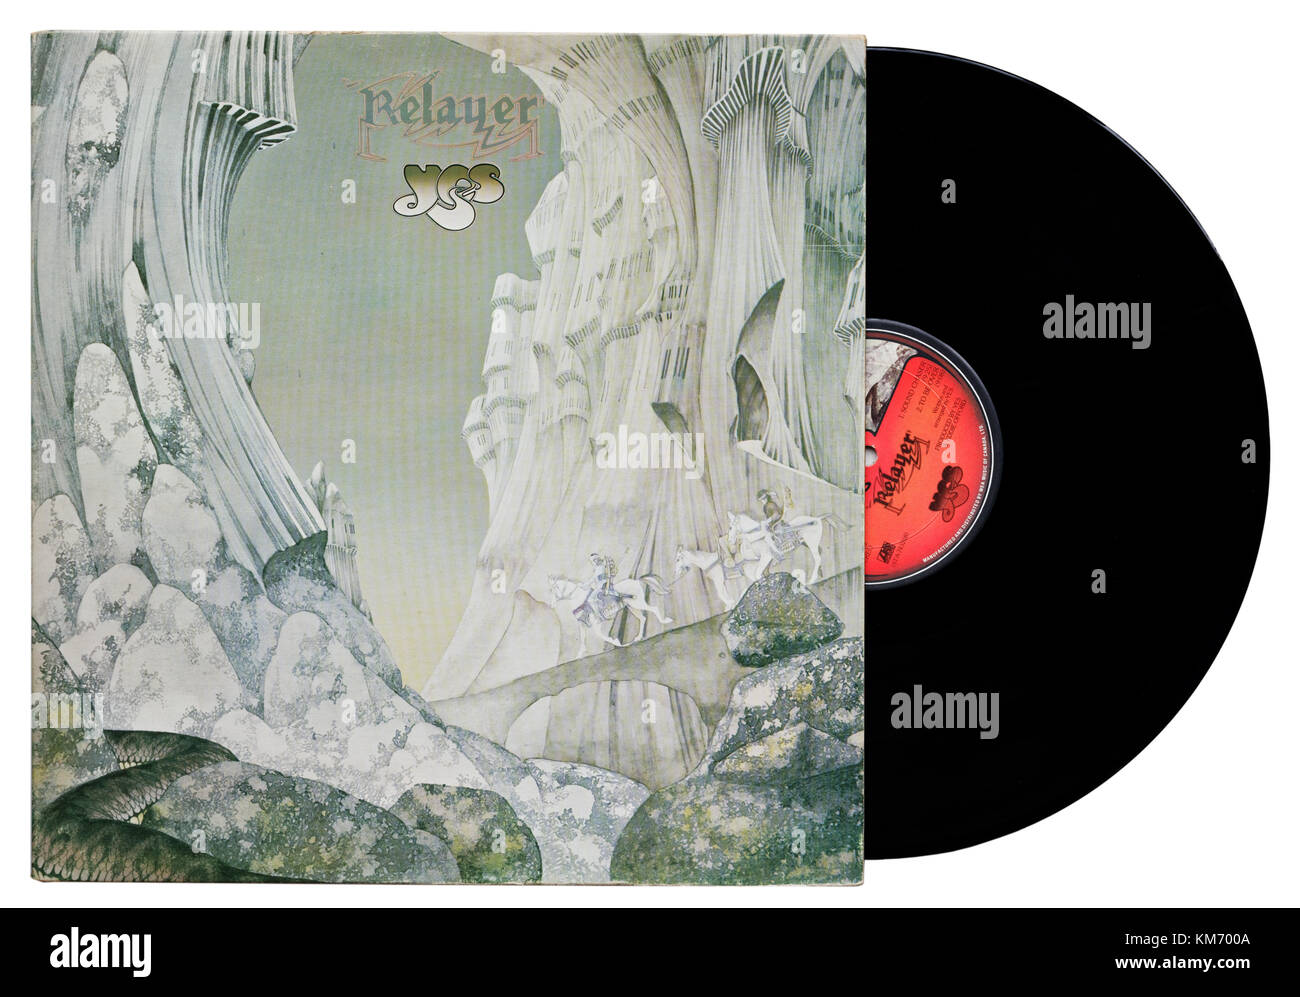 Yes Relayer album Stock Photo - Alamy